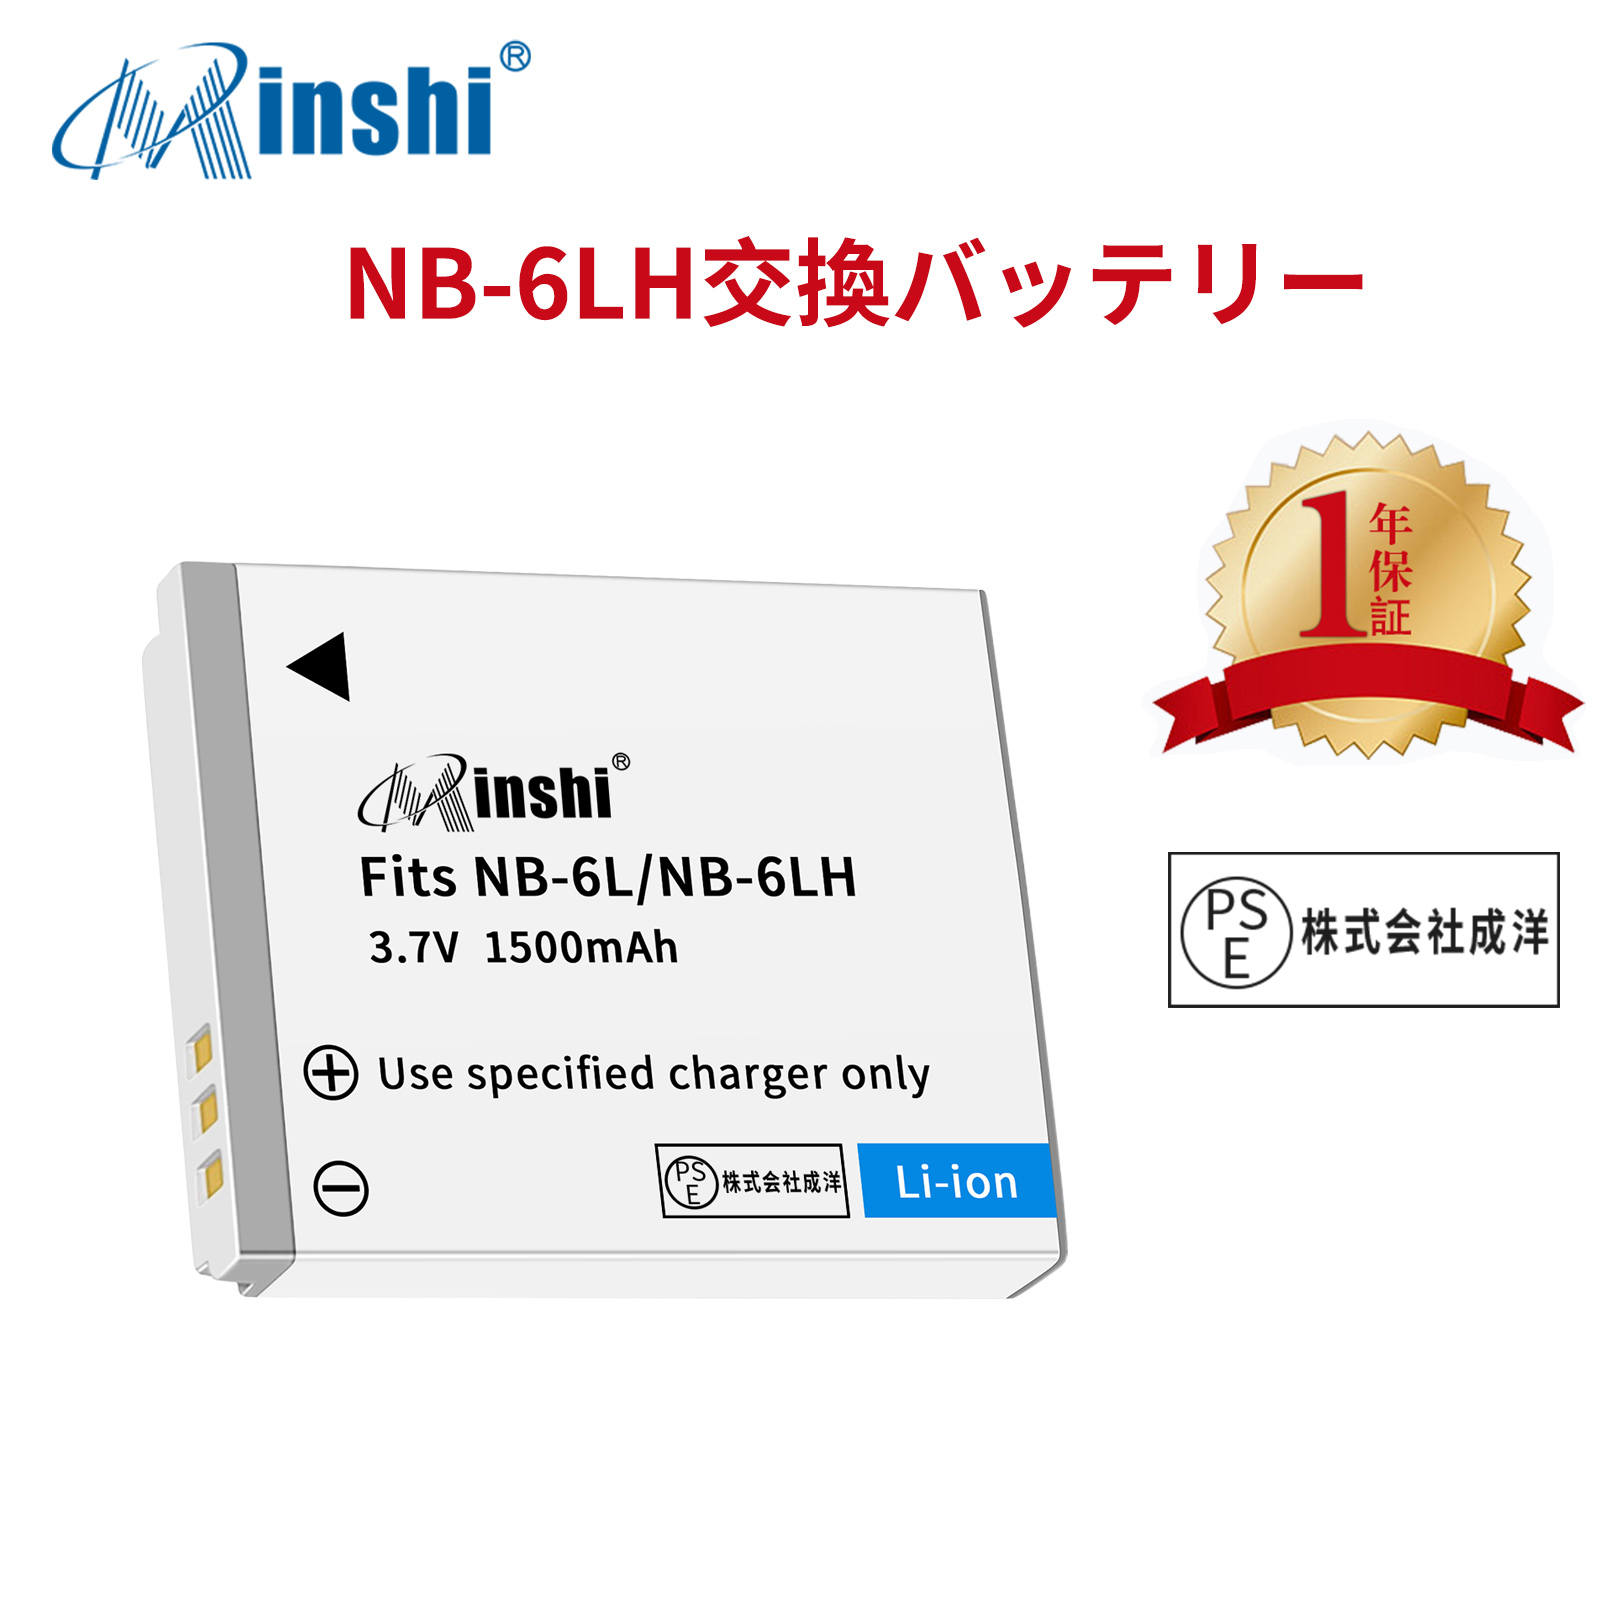 【1年保証】minshi Canon IXUS 105 IS NB-6L   NB-6L【1500mAh 3.7V】PSE認定済 高品質 NB-6LH 交換用バッテリー